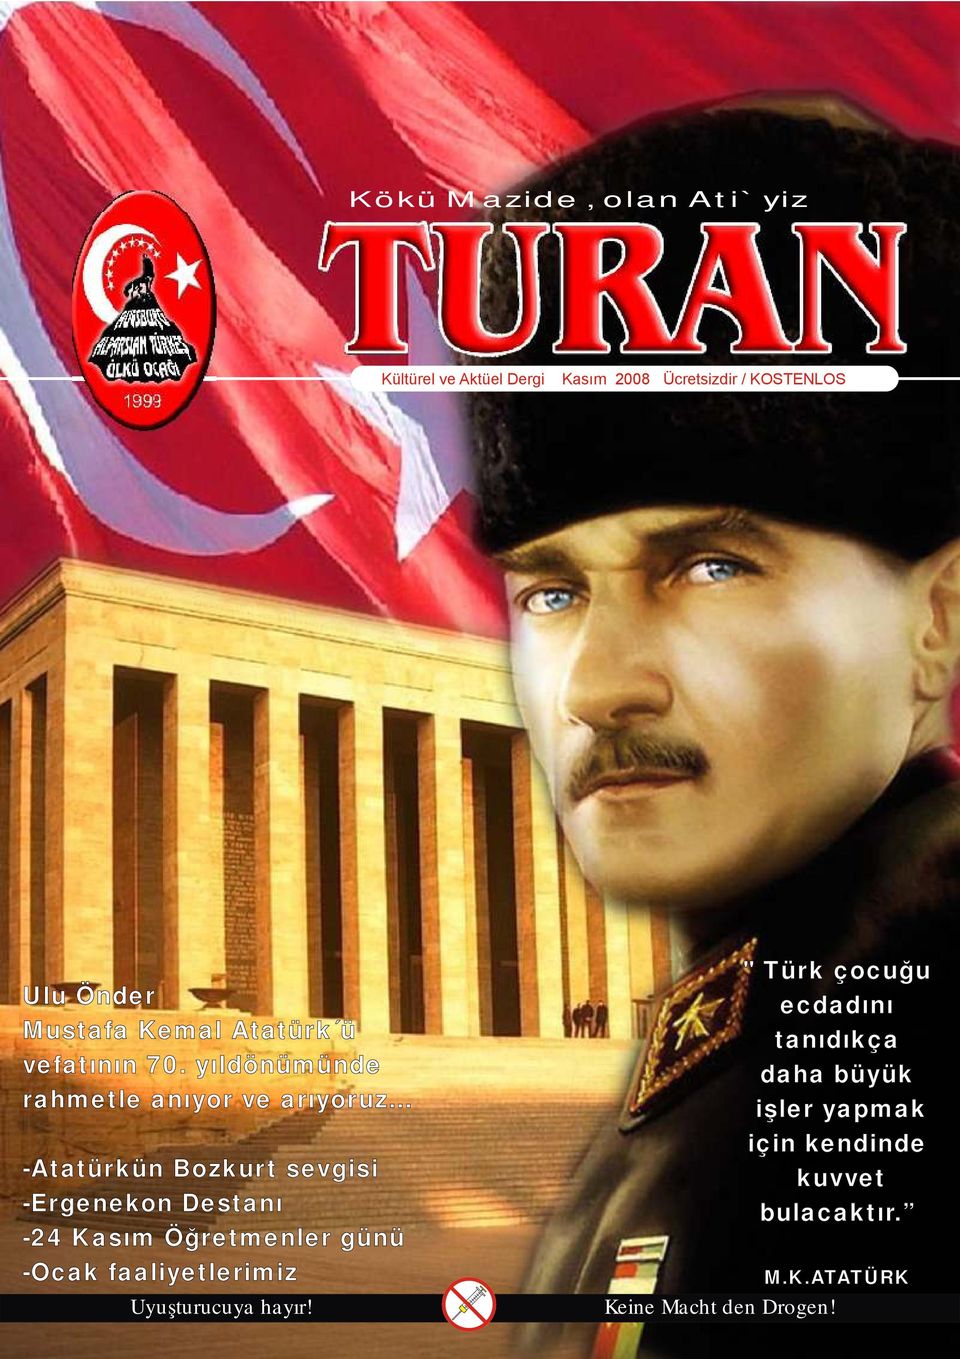 .. -Atatürkün Bozkurt sevgisi -Ergenekon Destanı -24 Kasım Öğretmenler günü -Ocak faaliyetlerimiz